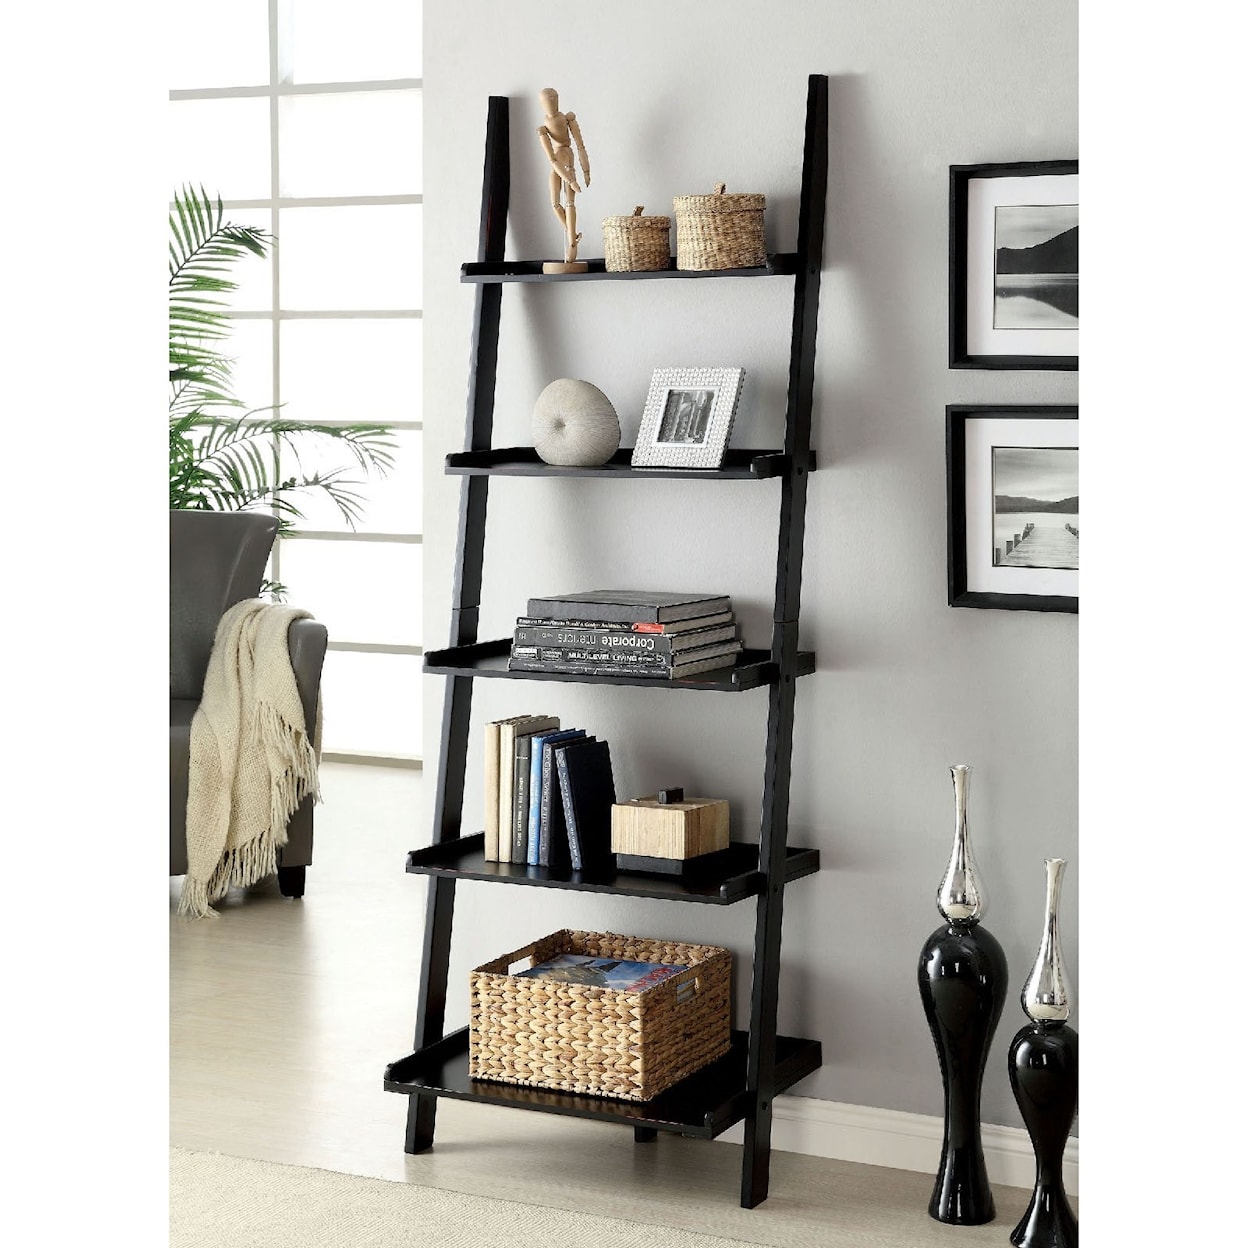 FUSA Sion Ladder Shelf